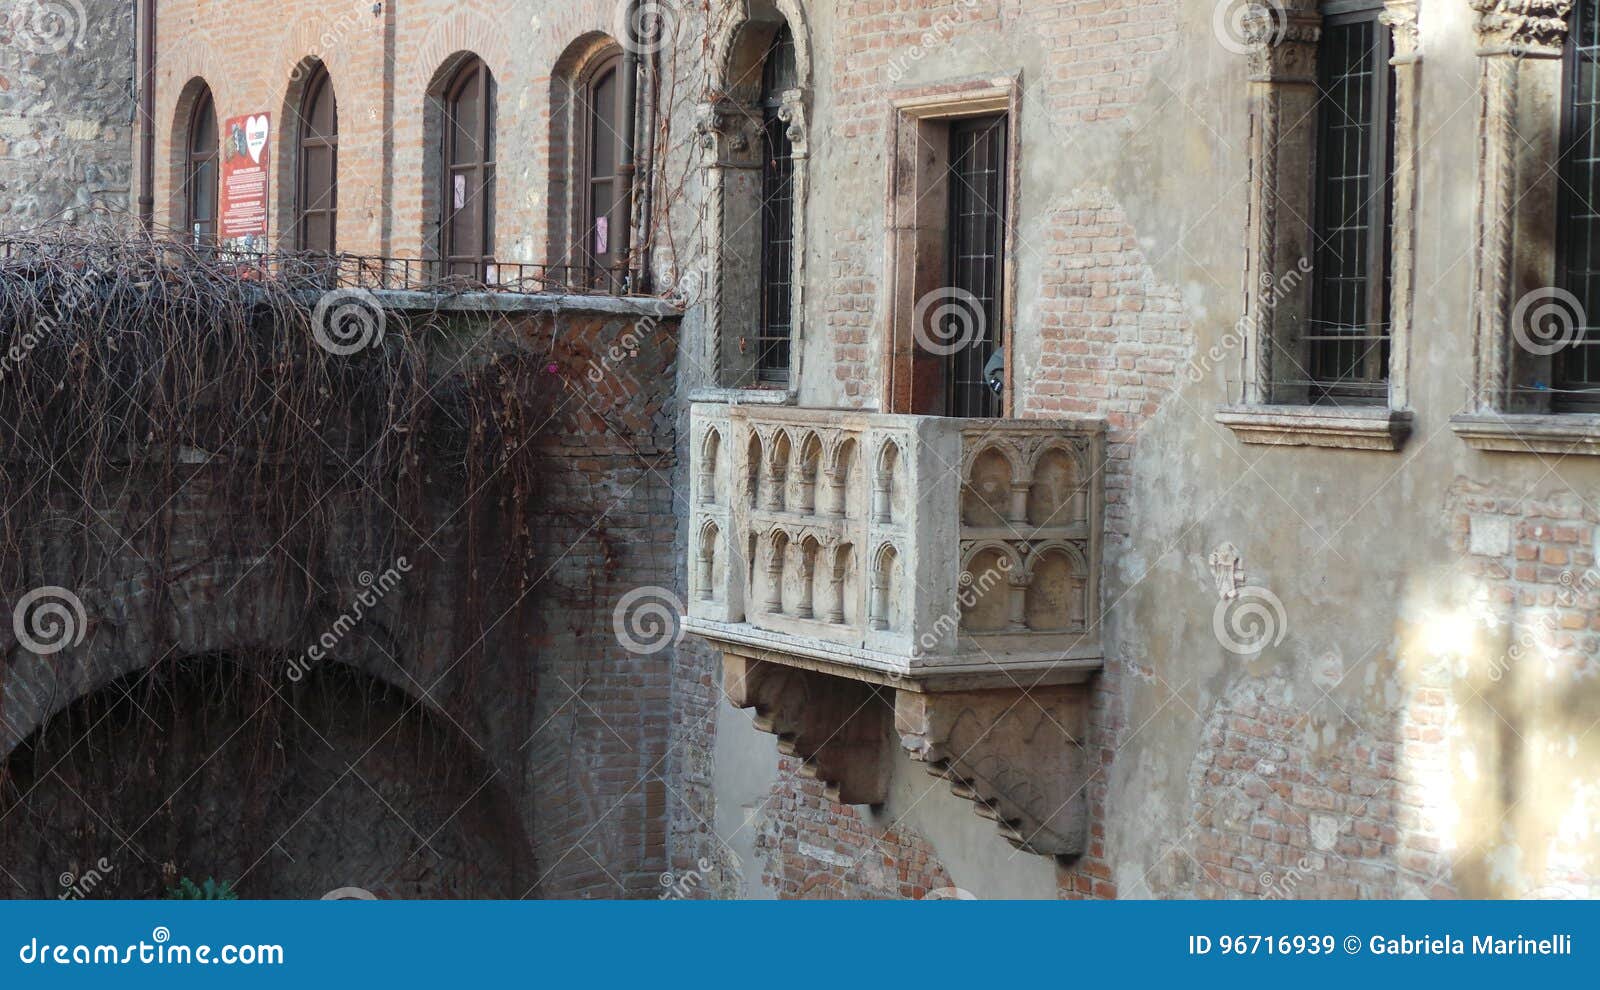 romeo y julieta balcony